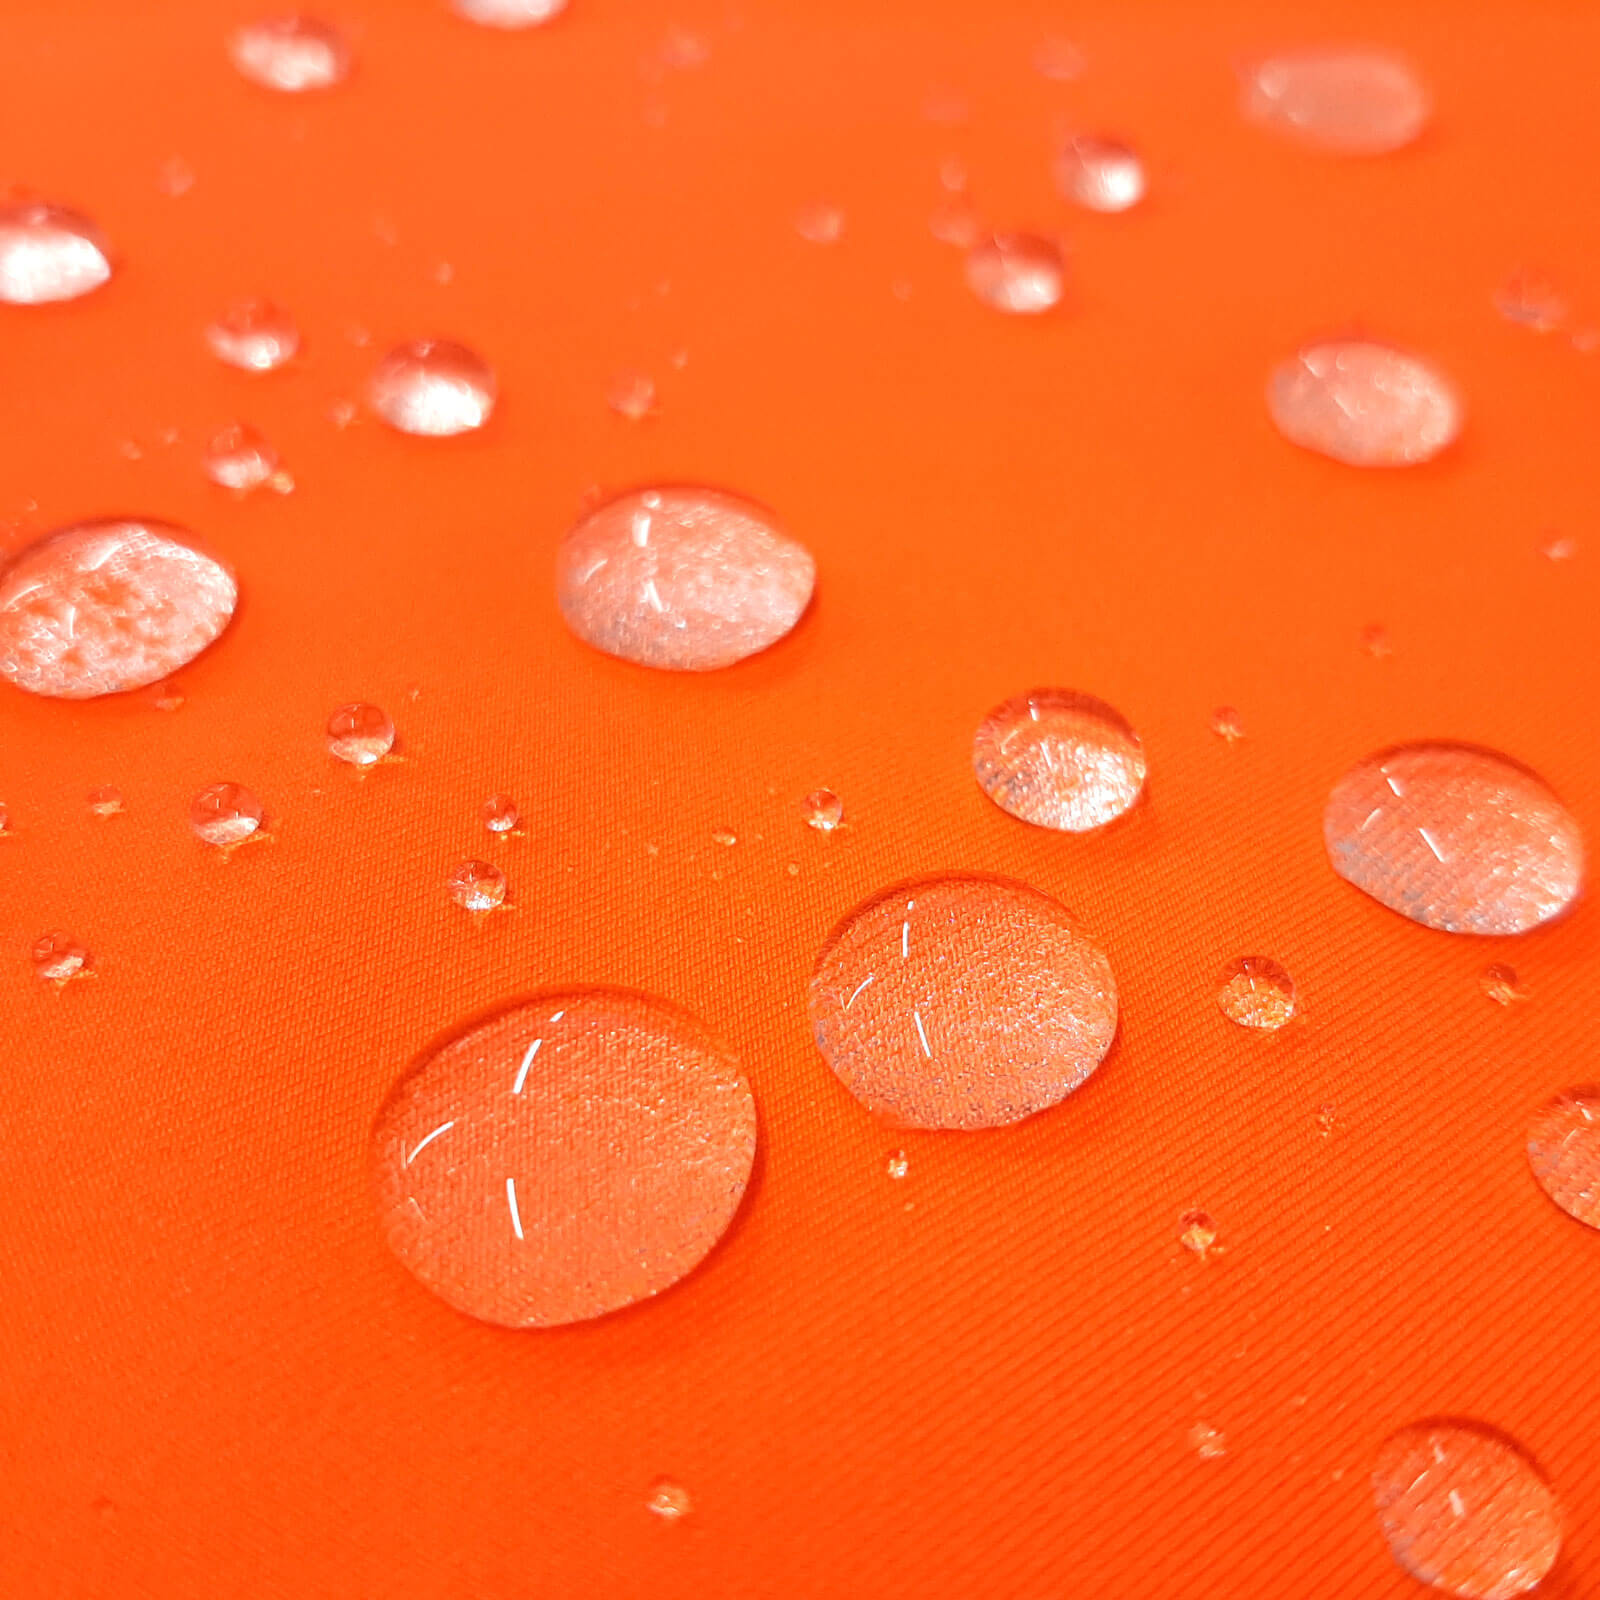 Hugi - Softshell Pontetorto de 3 capas - Estiramiento ligero - Naranja neón